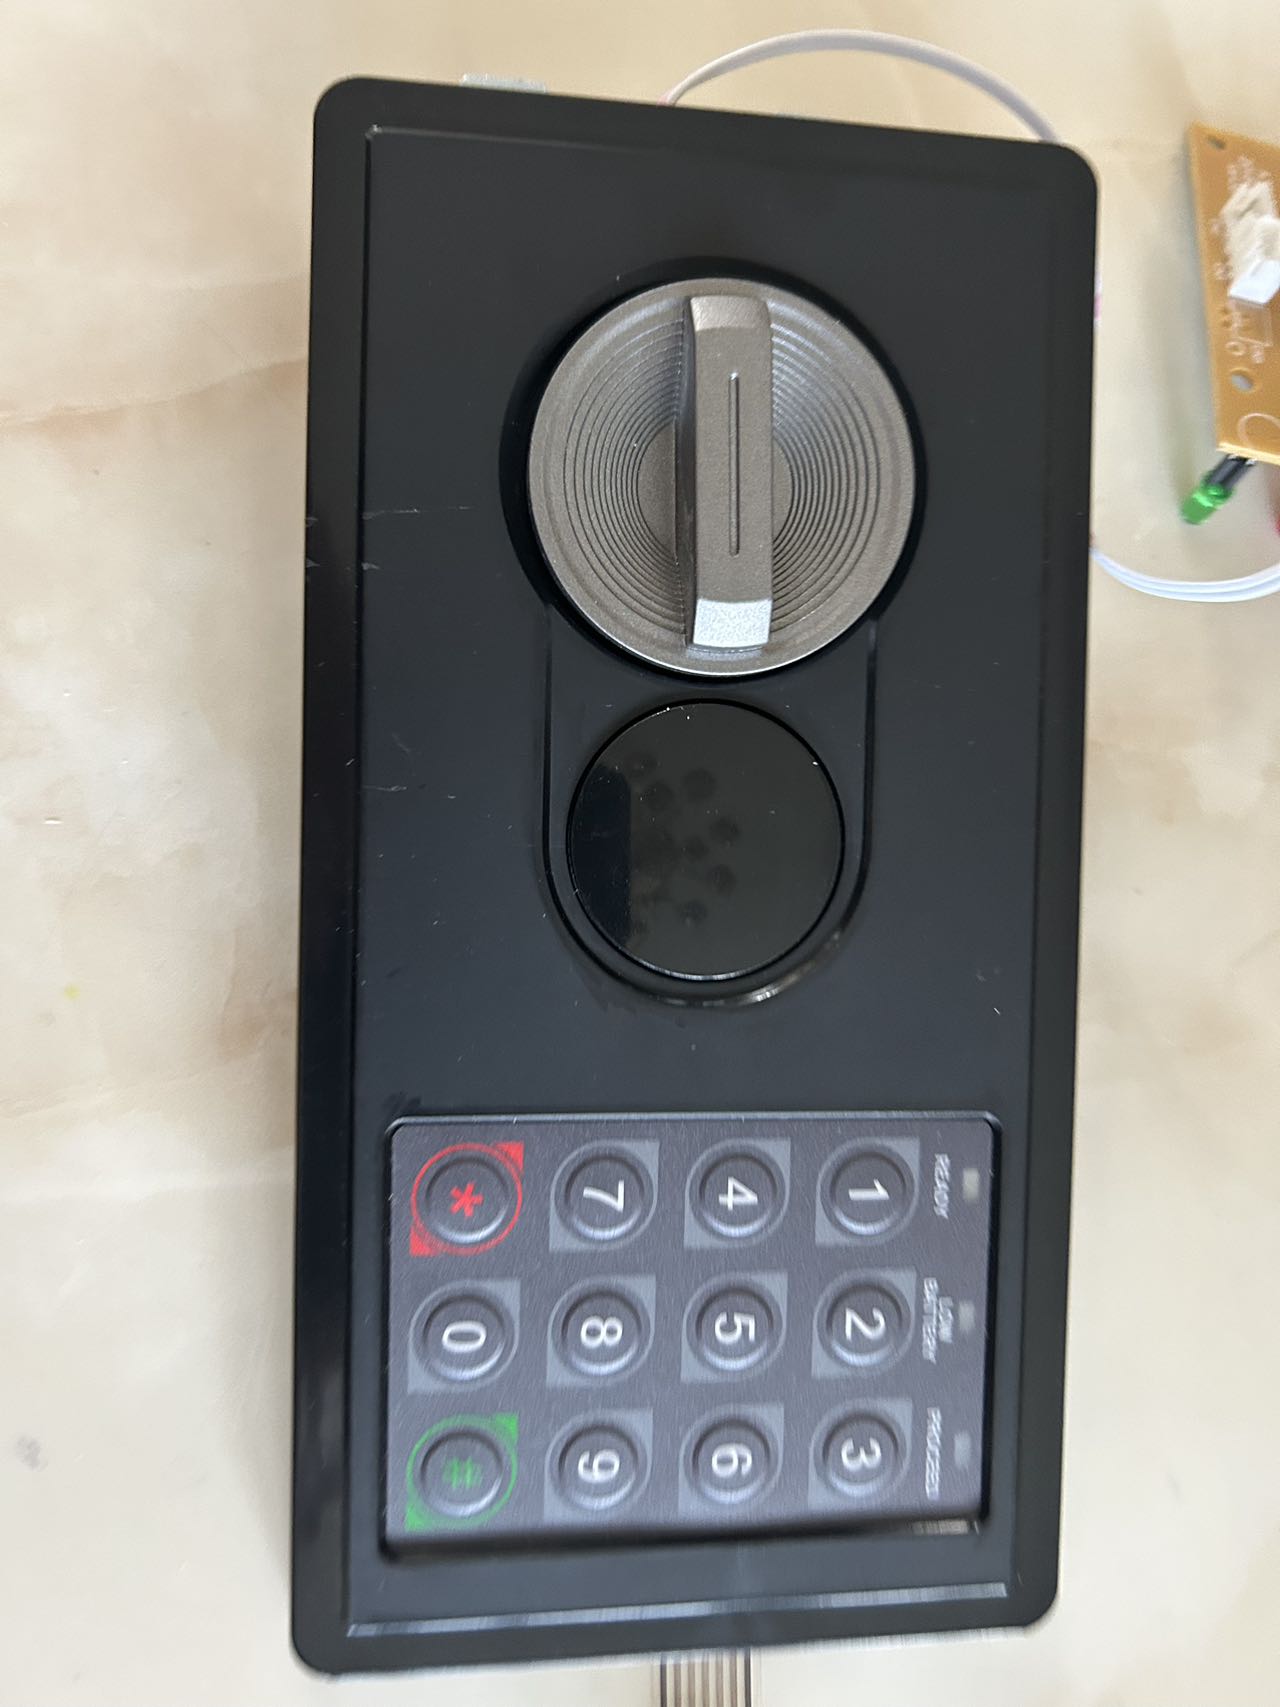 Китайская дешевая цифровая клавиатура с паролем и электронный замок для домашнего сейфа в отеле, производитель